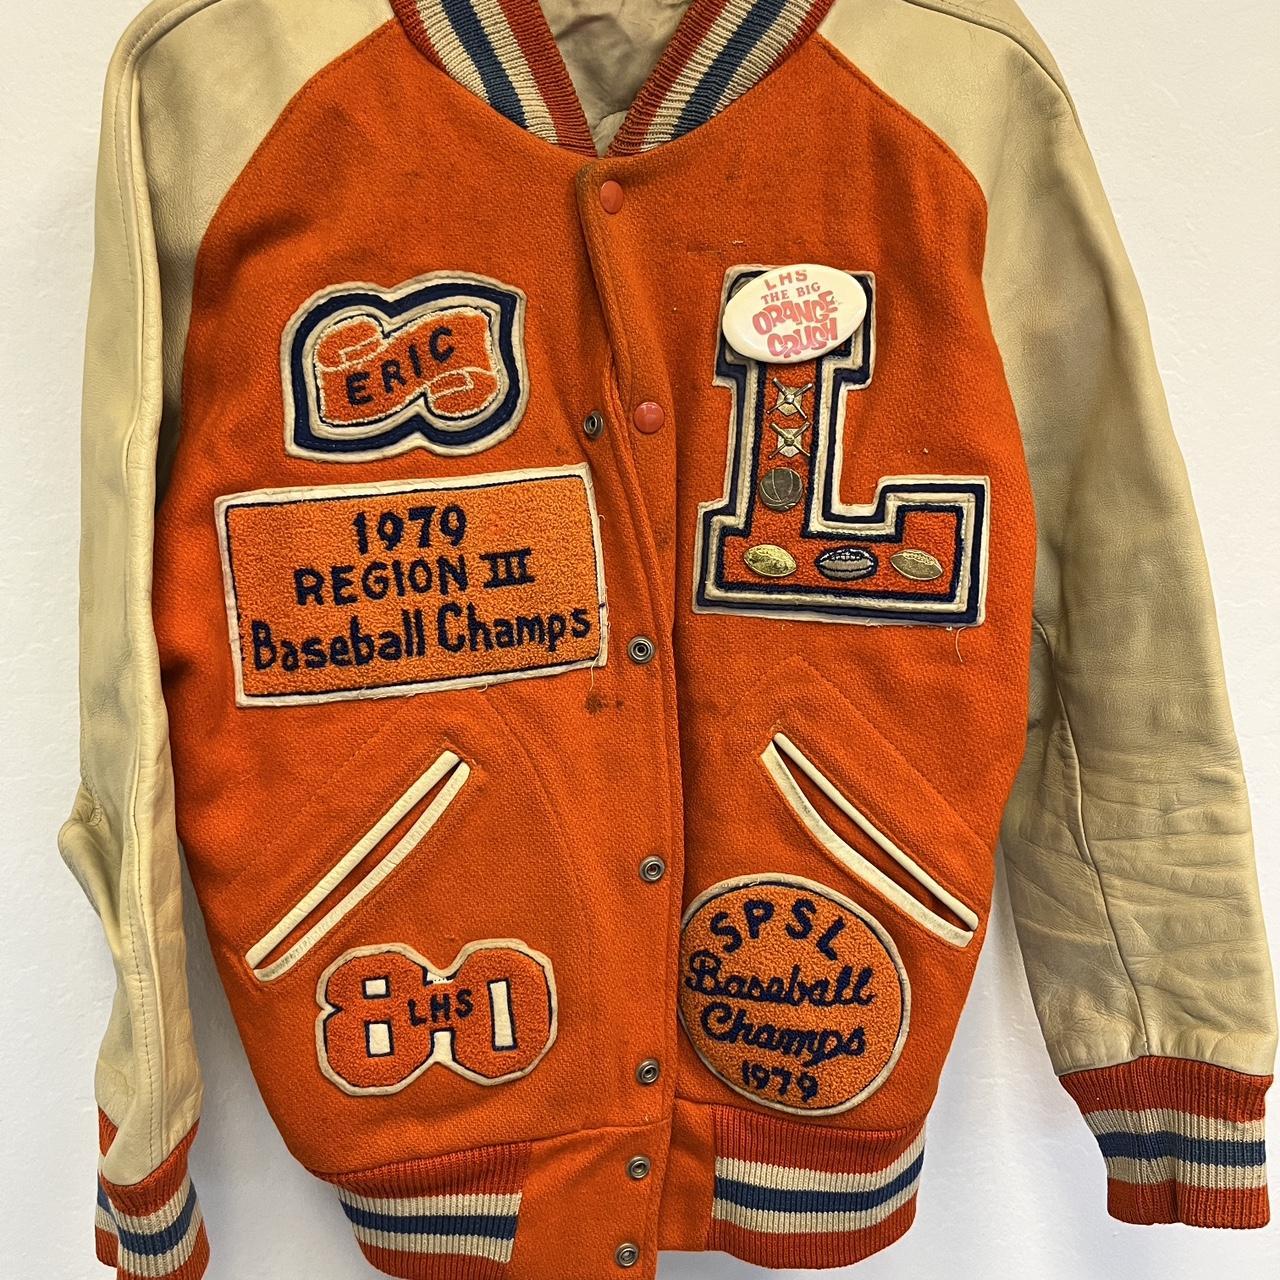 Real vintage letterman jacket - Depop